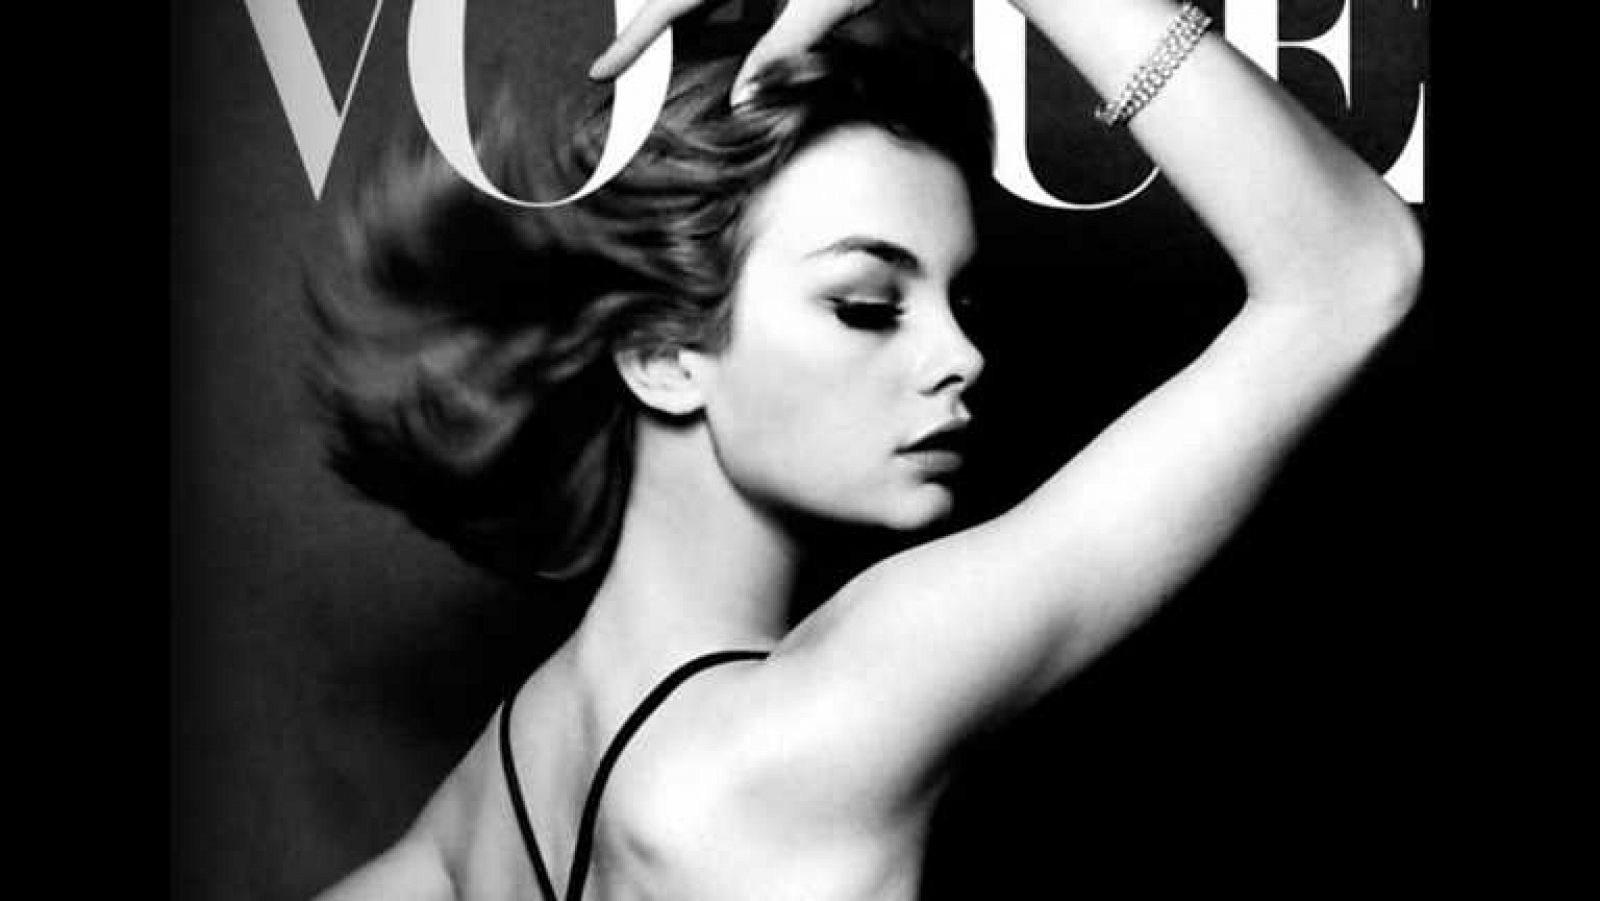 La noche temática - Vogue: el número de septiembre